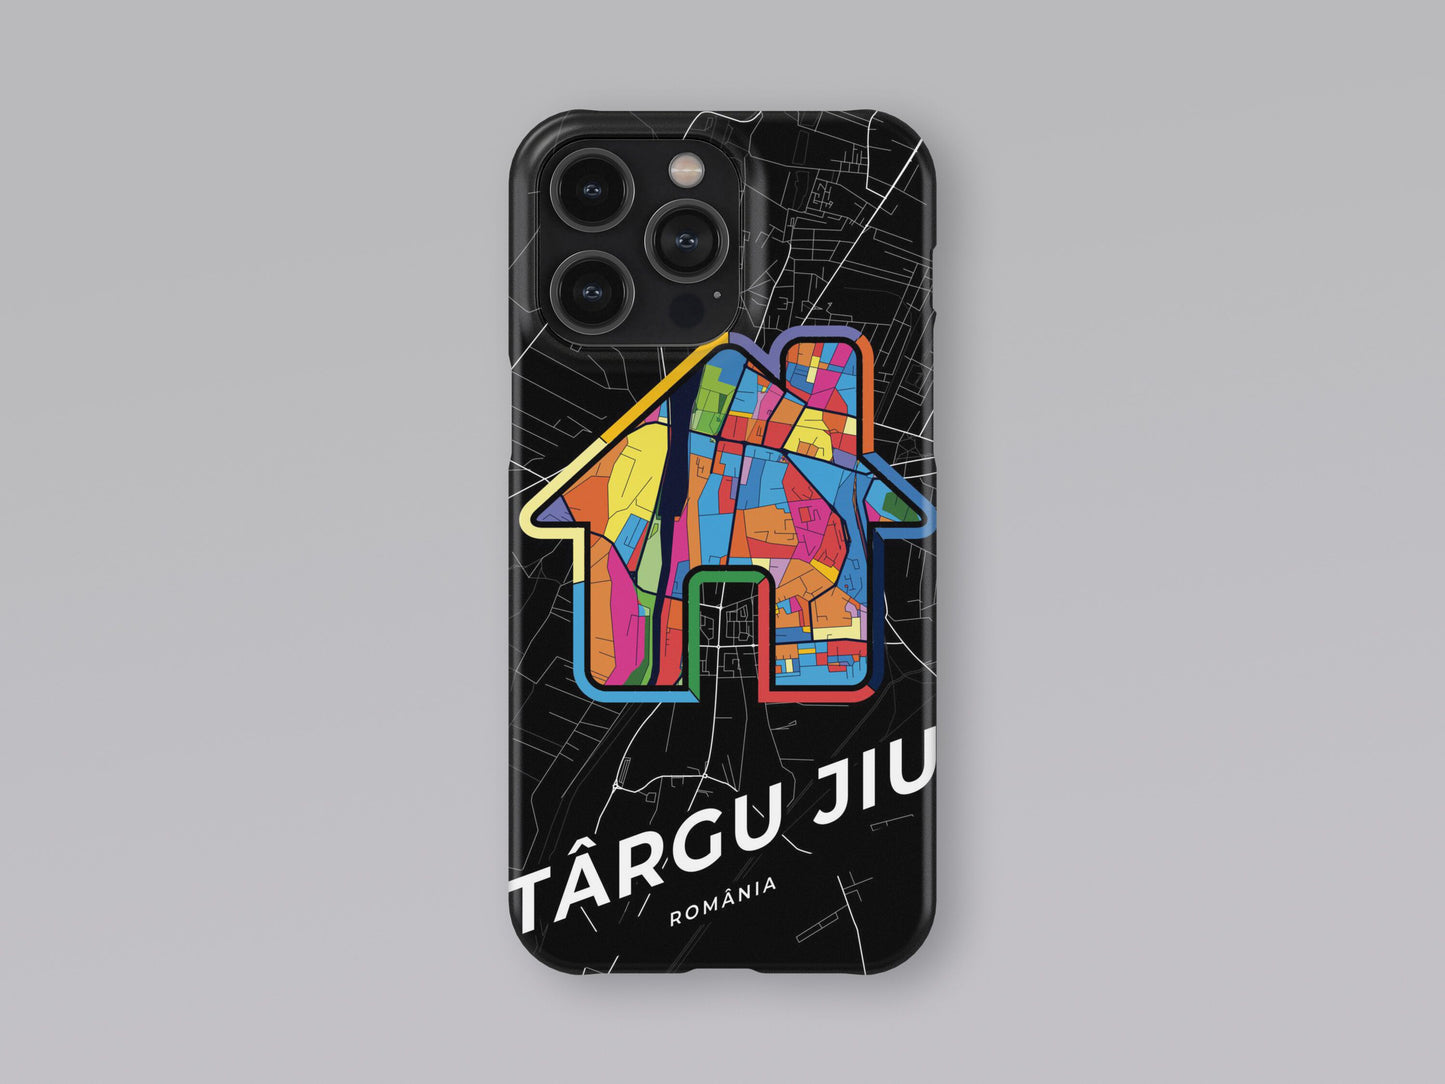 Târgu Jiu Romania slim phone case with colorful icon 3